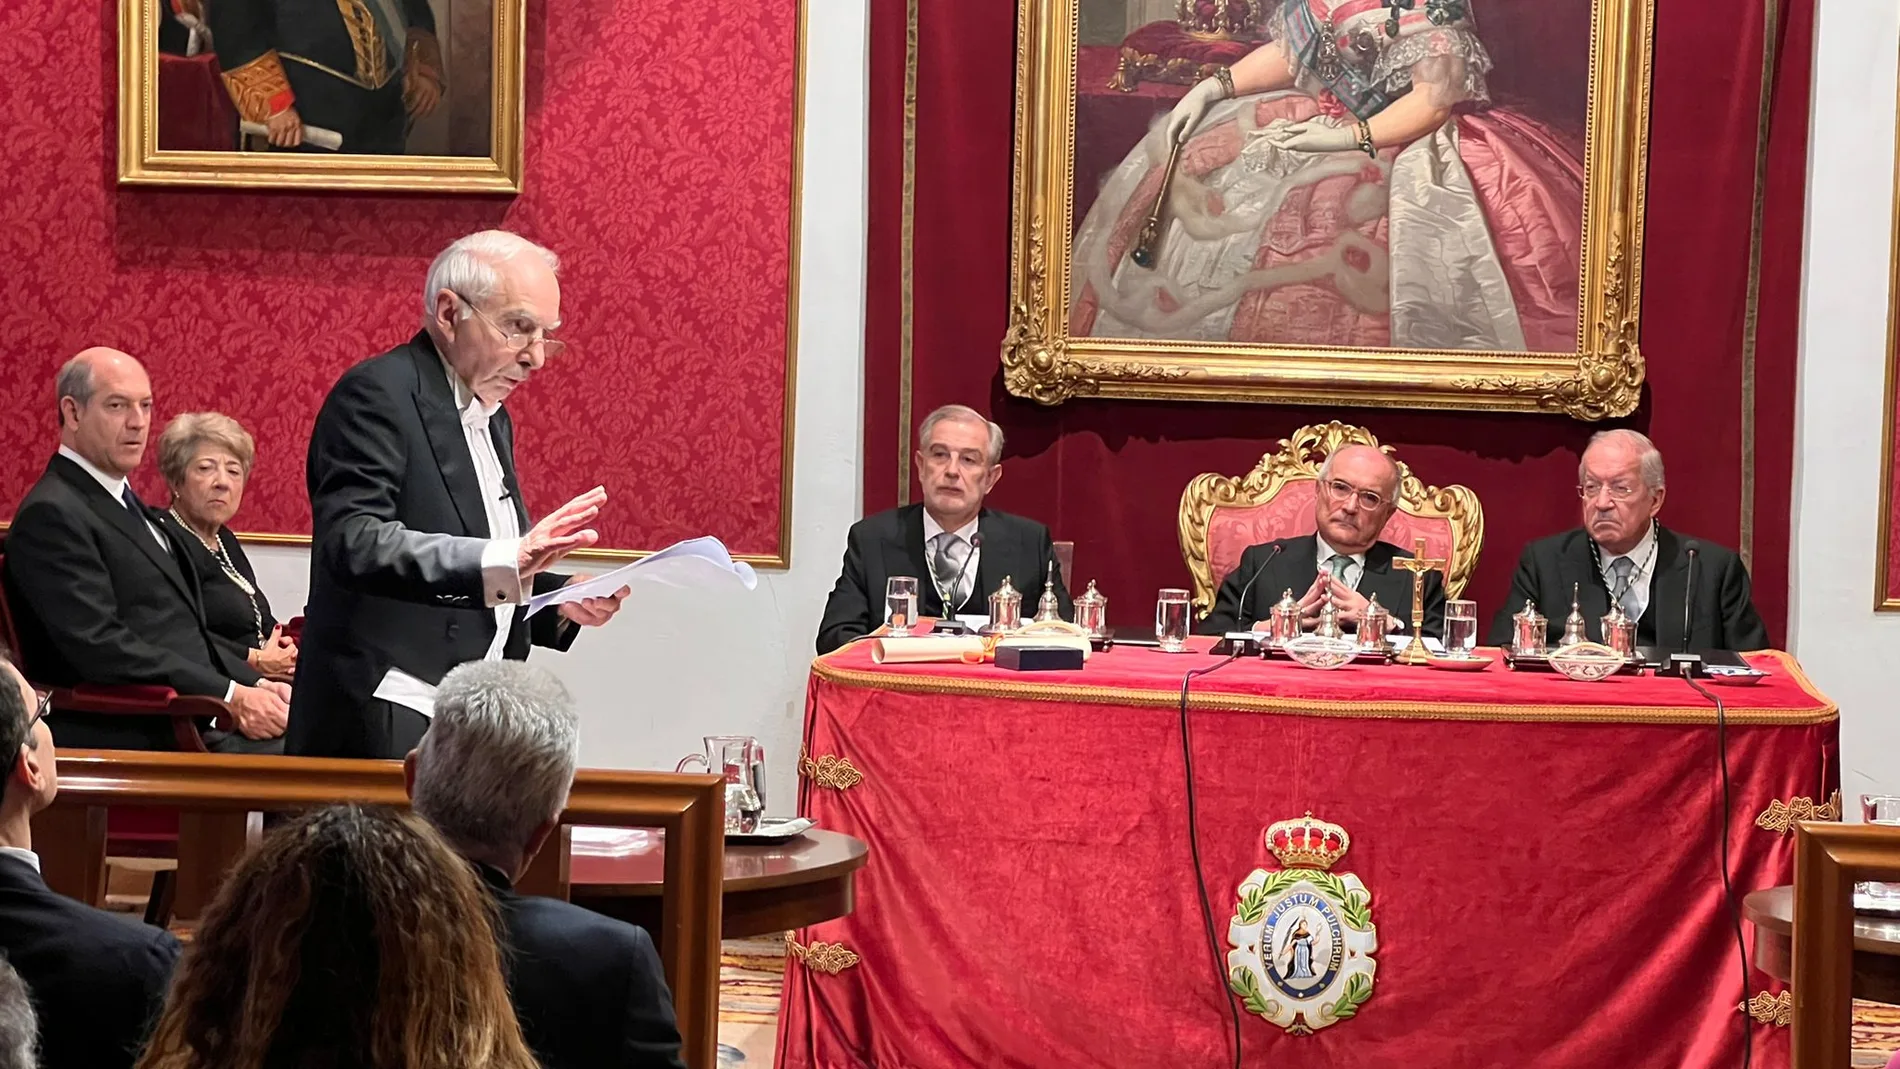 El ex primer ministro italiano Giuliano Amato pronuncia su discurso como miembro de honor de la Academia de las Ciencias Morales y Políticas